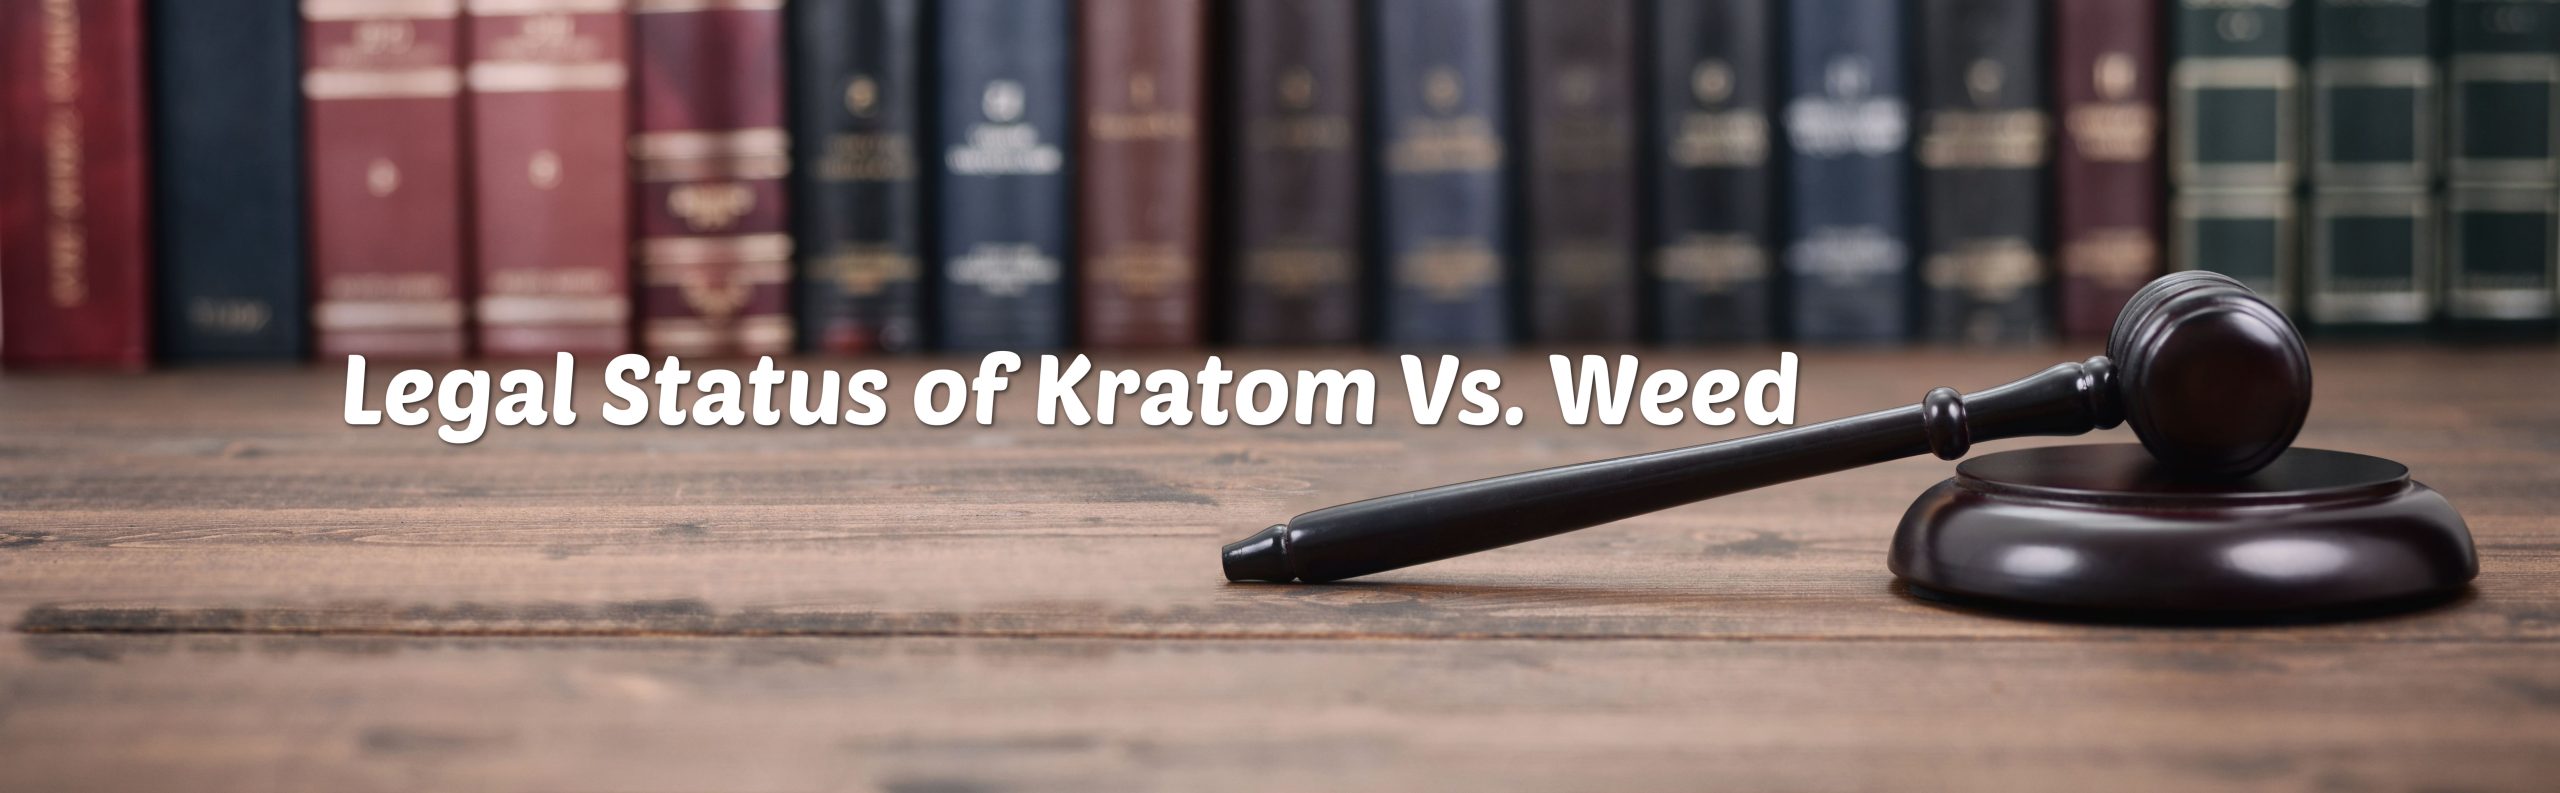 image of legal status of kratom vs weed